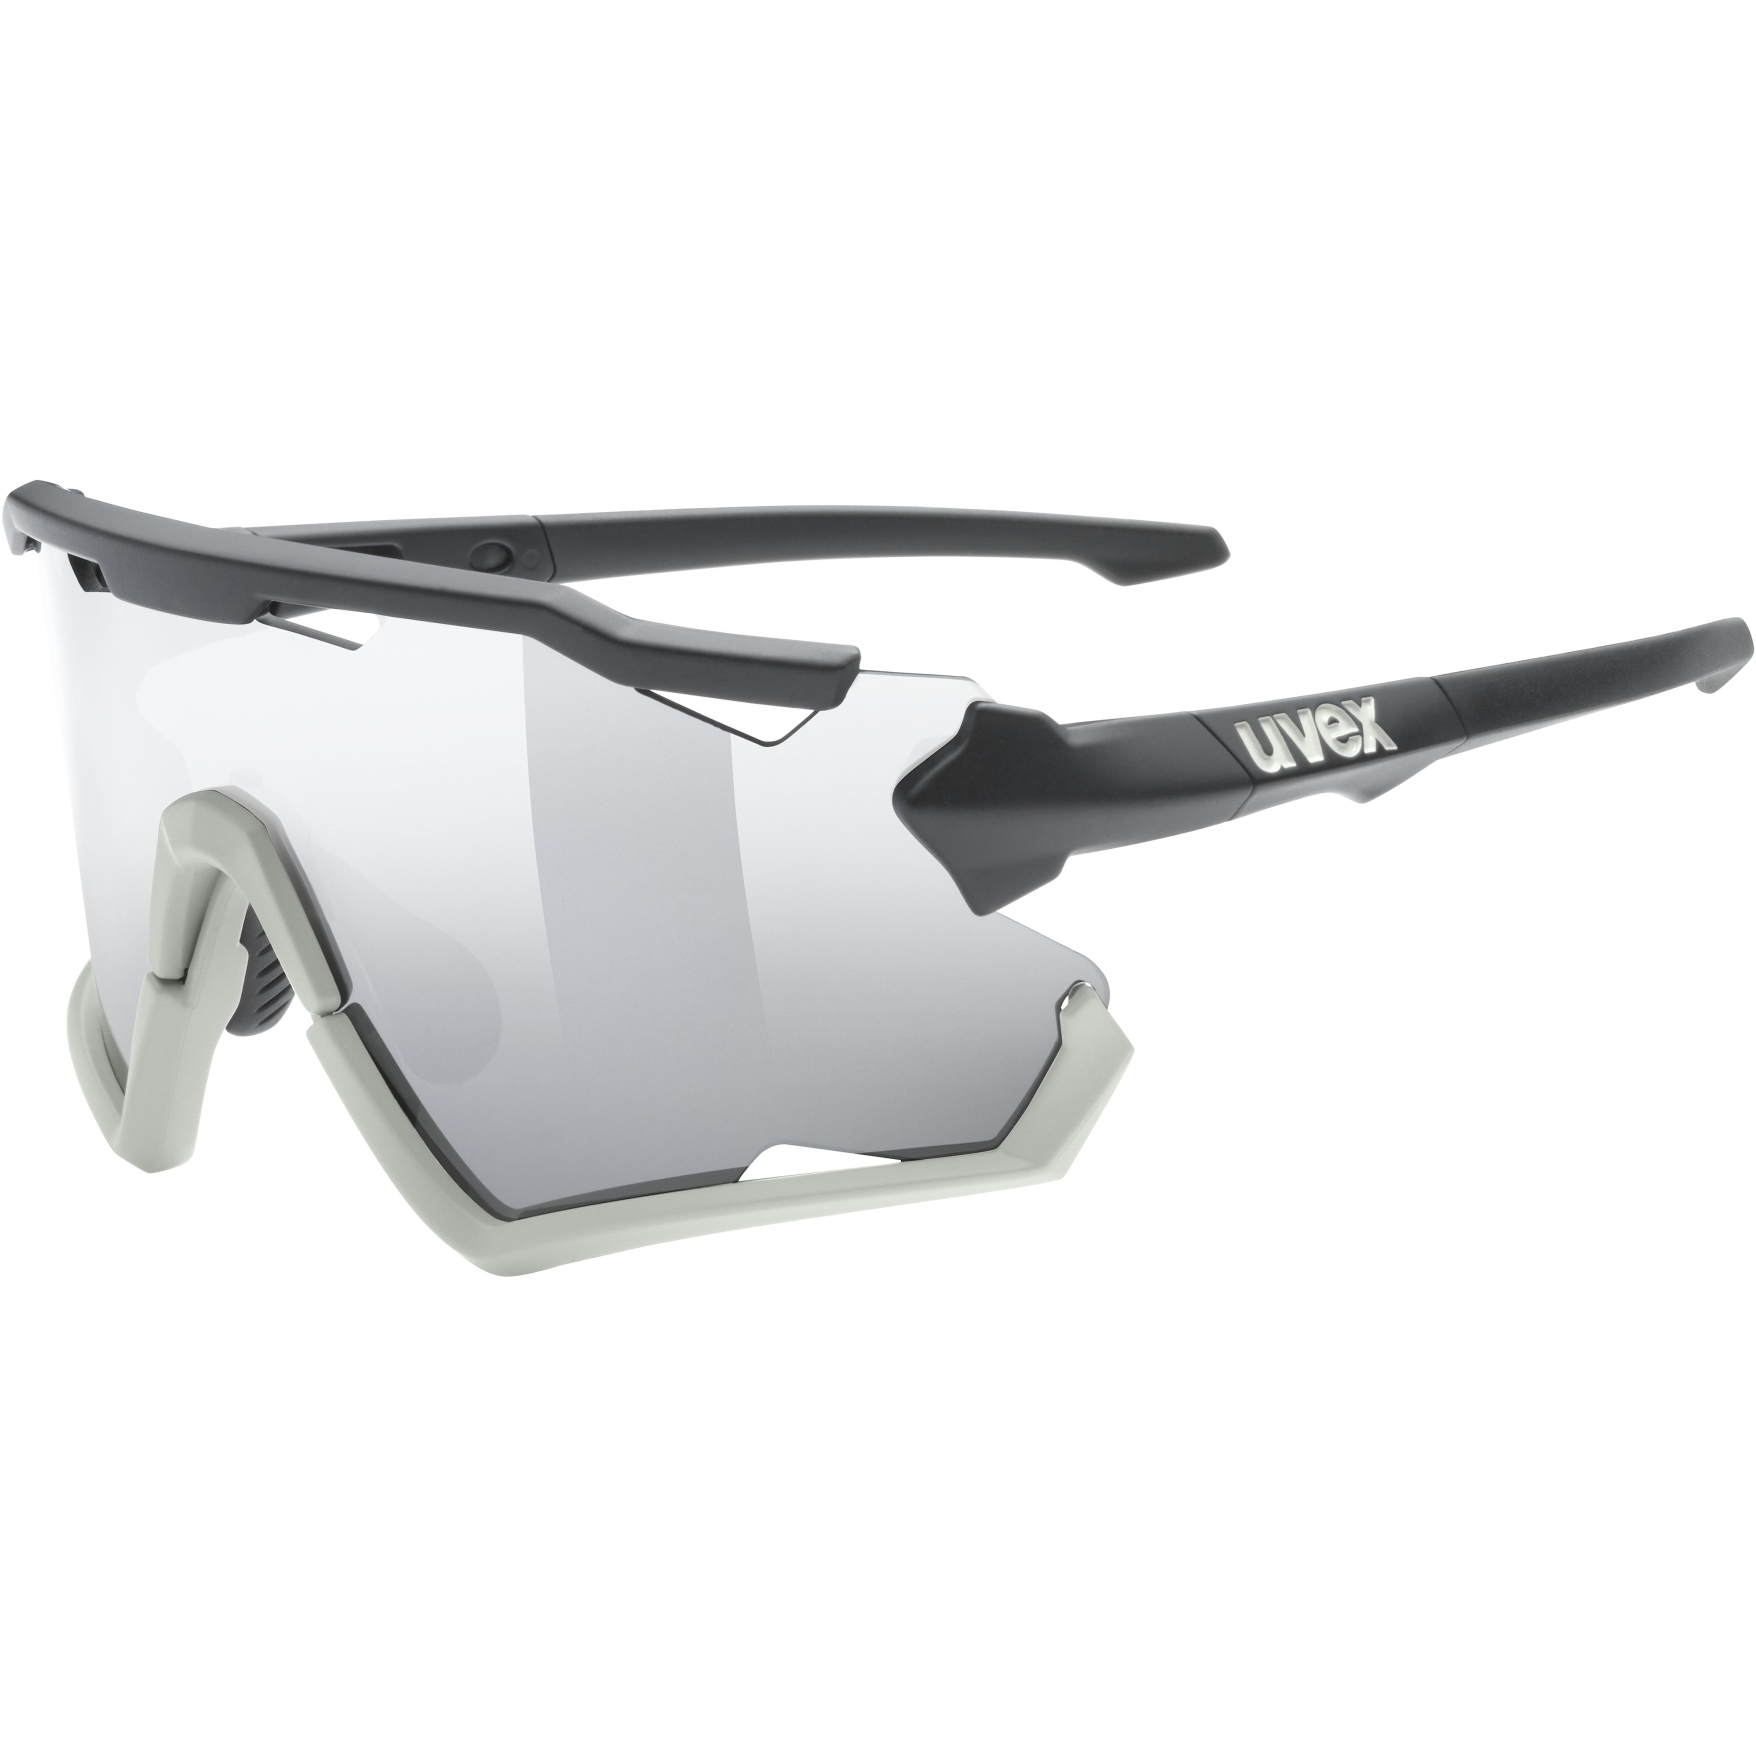 Produktbild von Uvex sportstyle 228 Brille - black sand mat/mirror silver